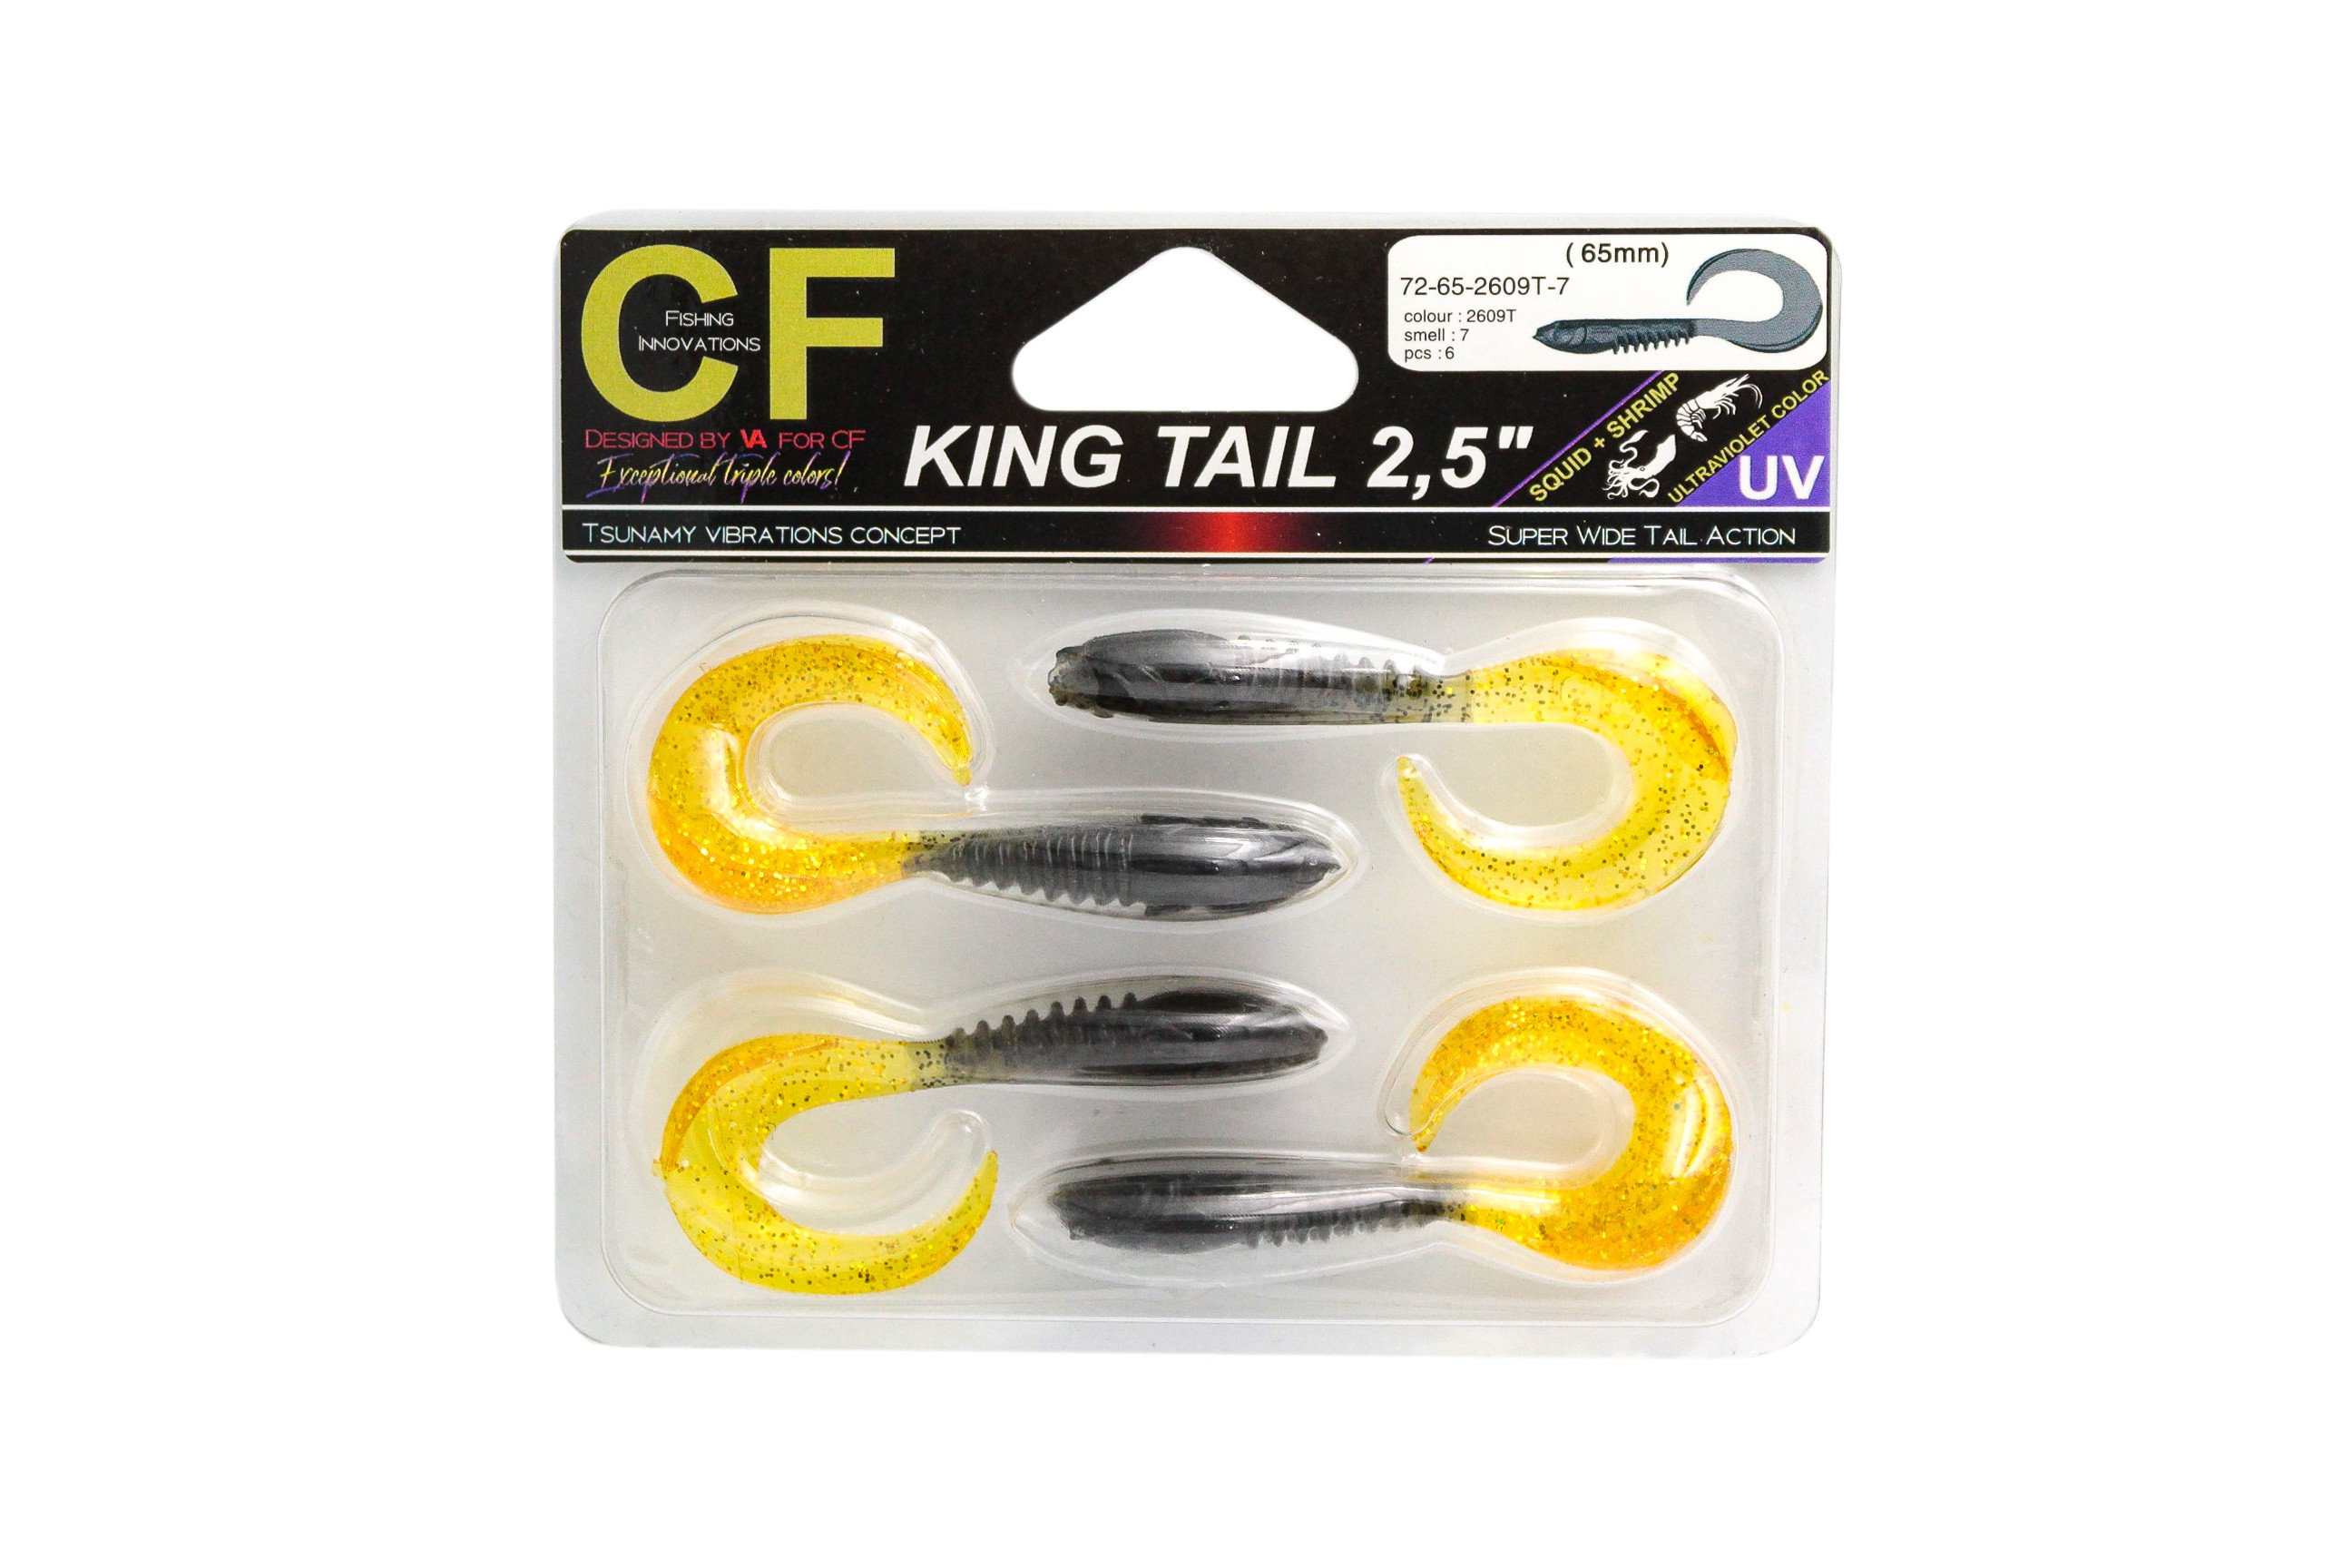 Приманка Crazy Fish King Tail 2,5'' 72-65-2609T-7 - фото 1